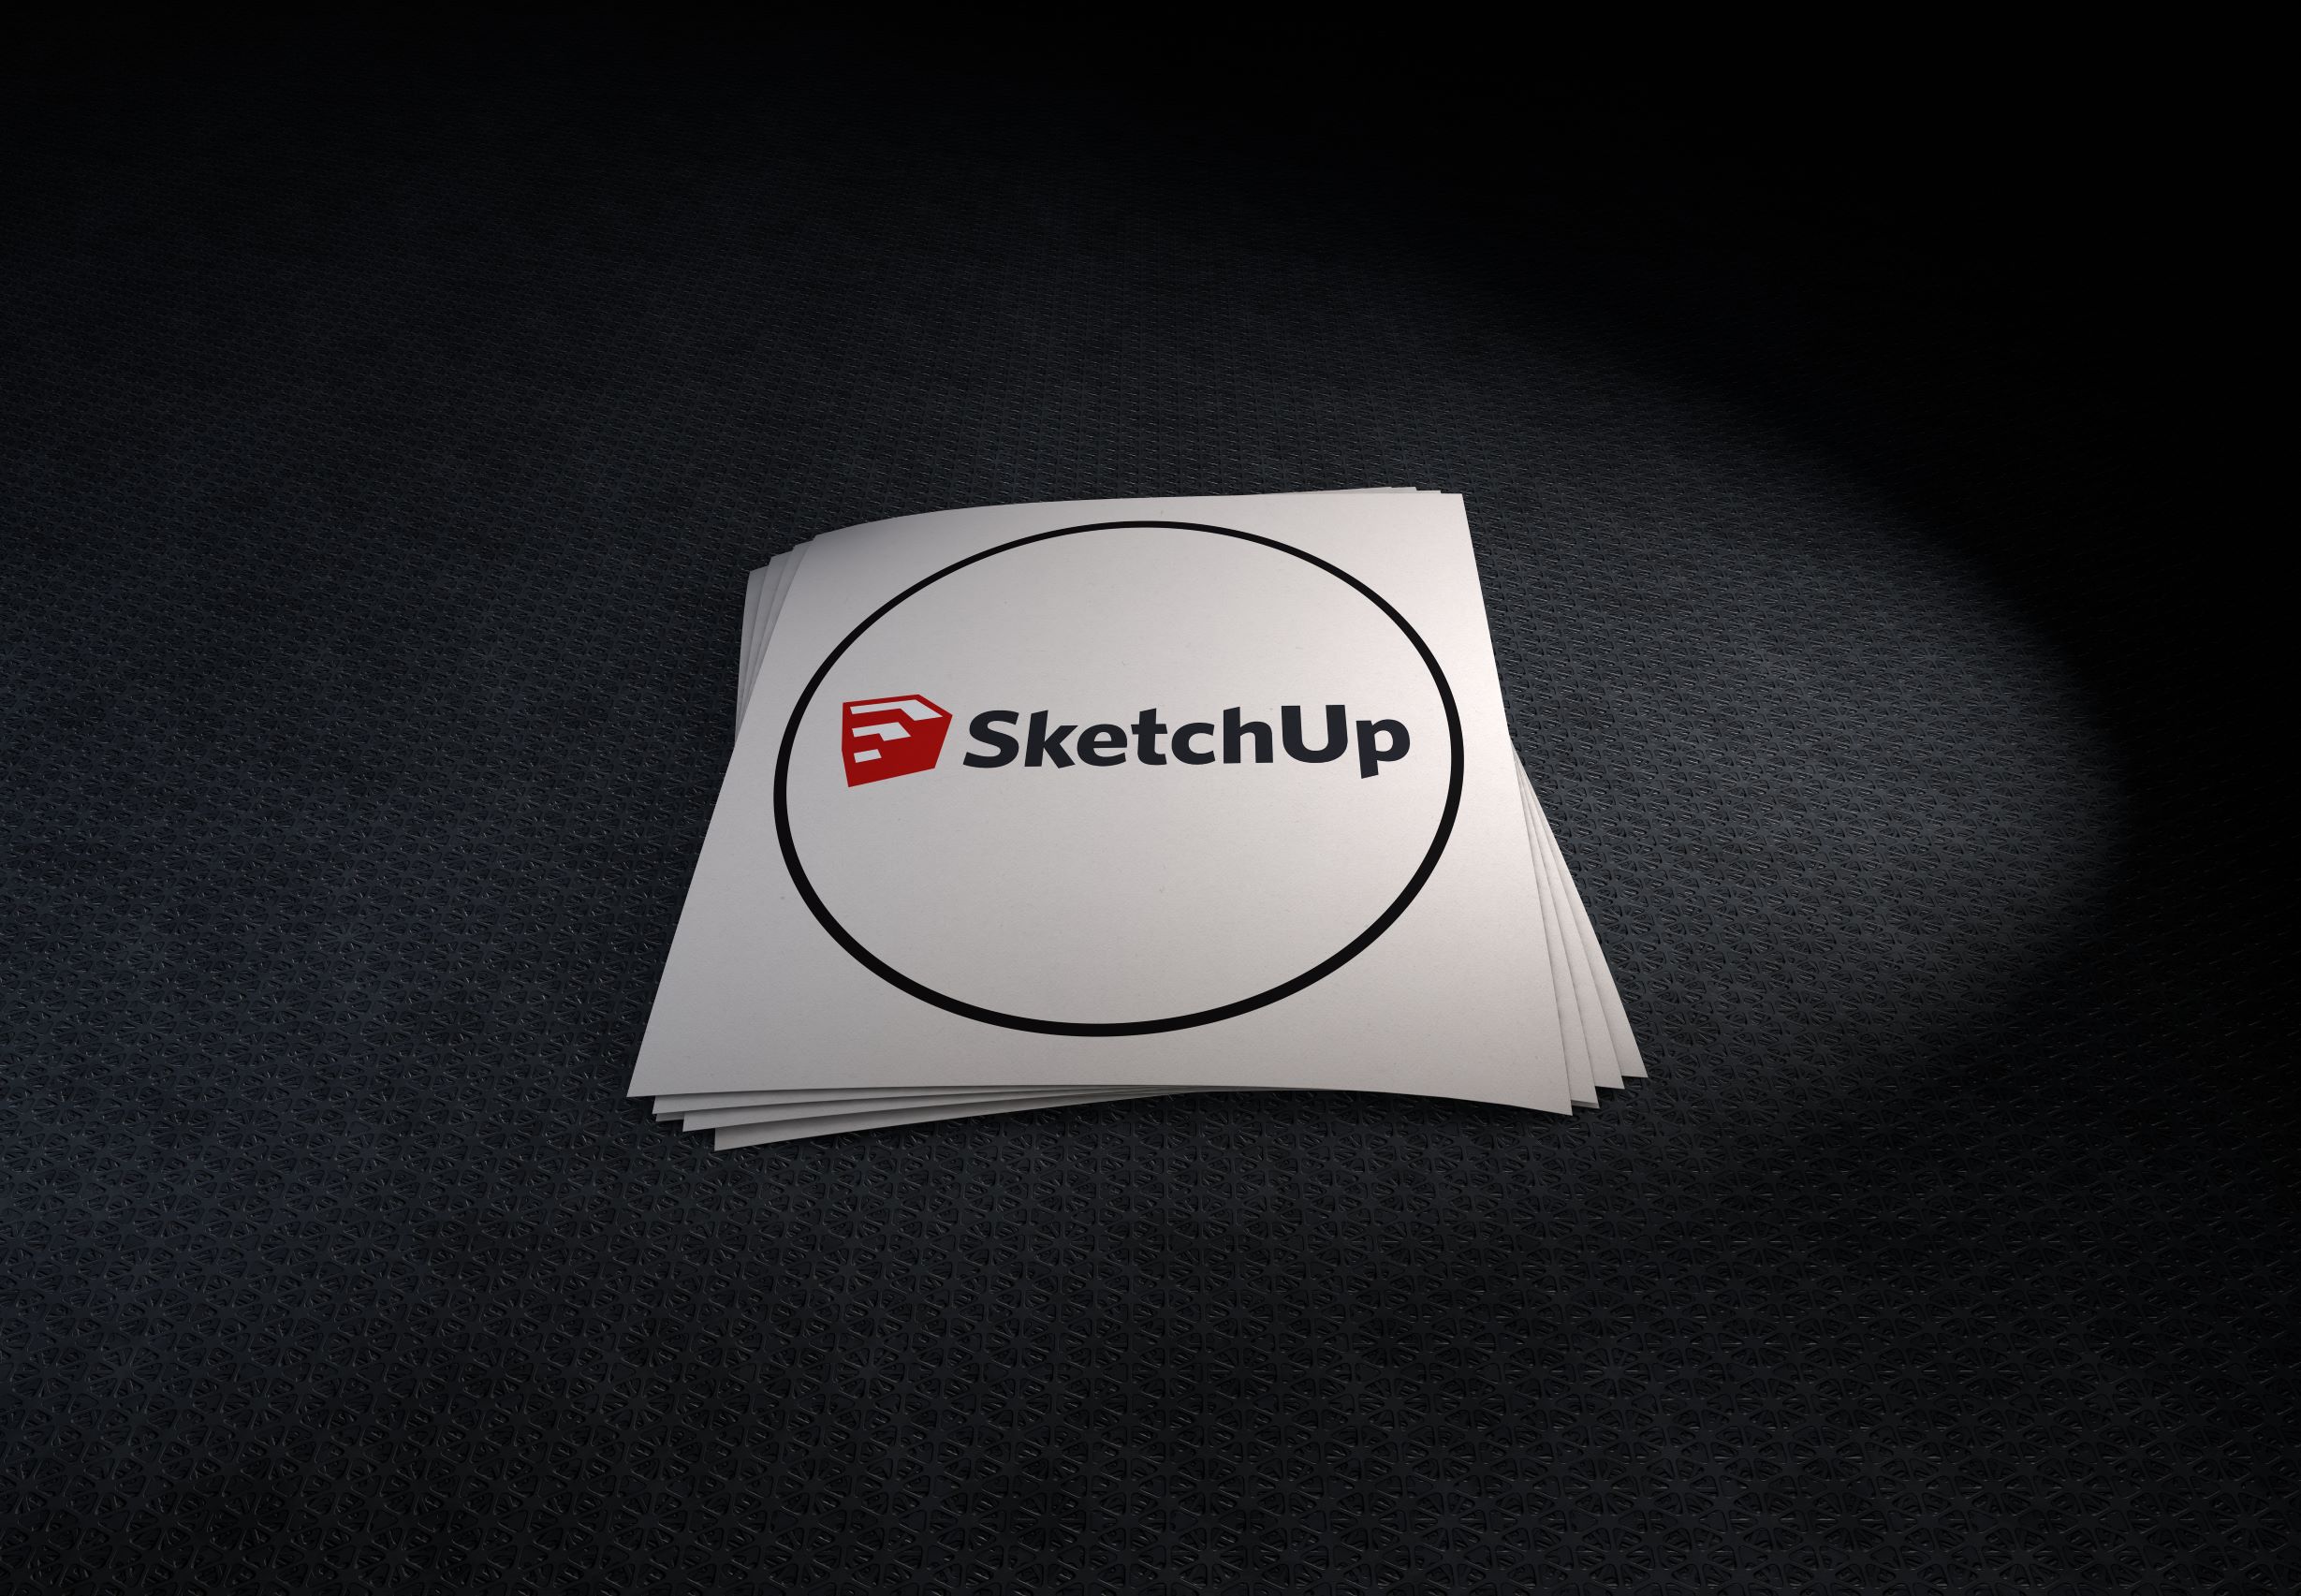 Die Sketchup 3D-Modellierungssoftware